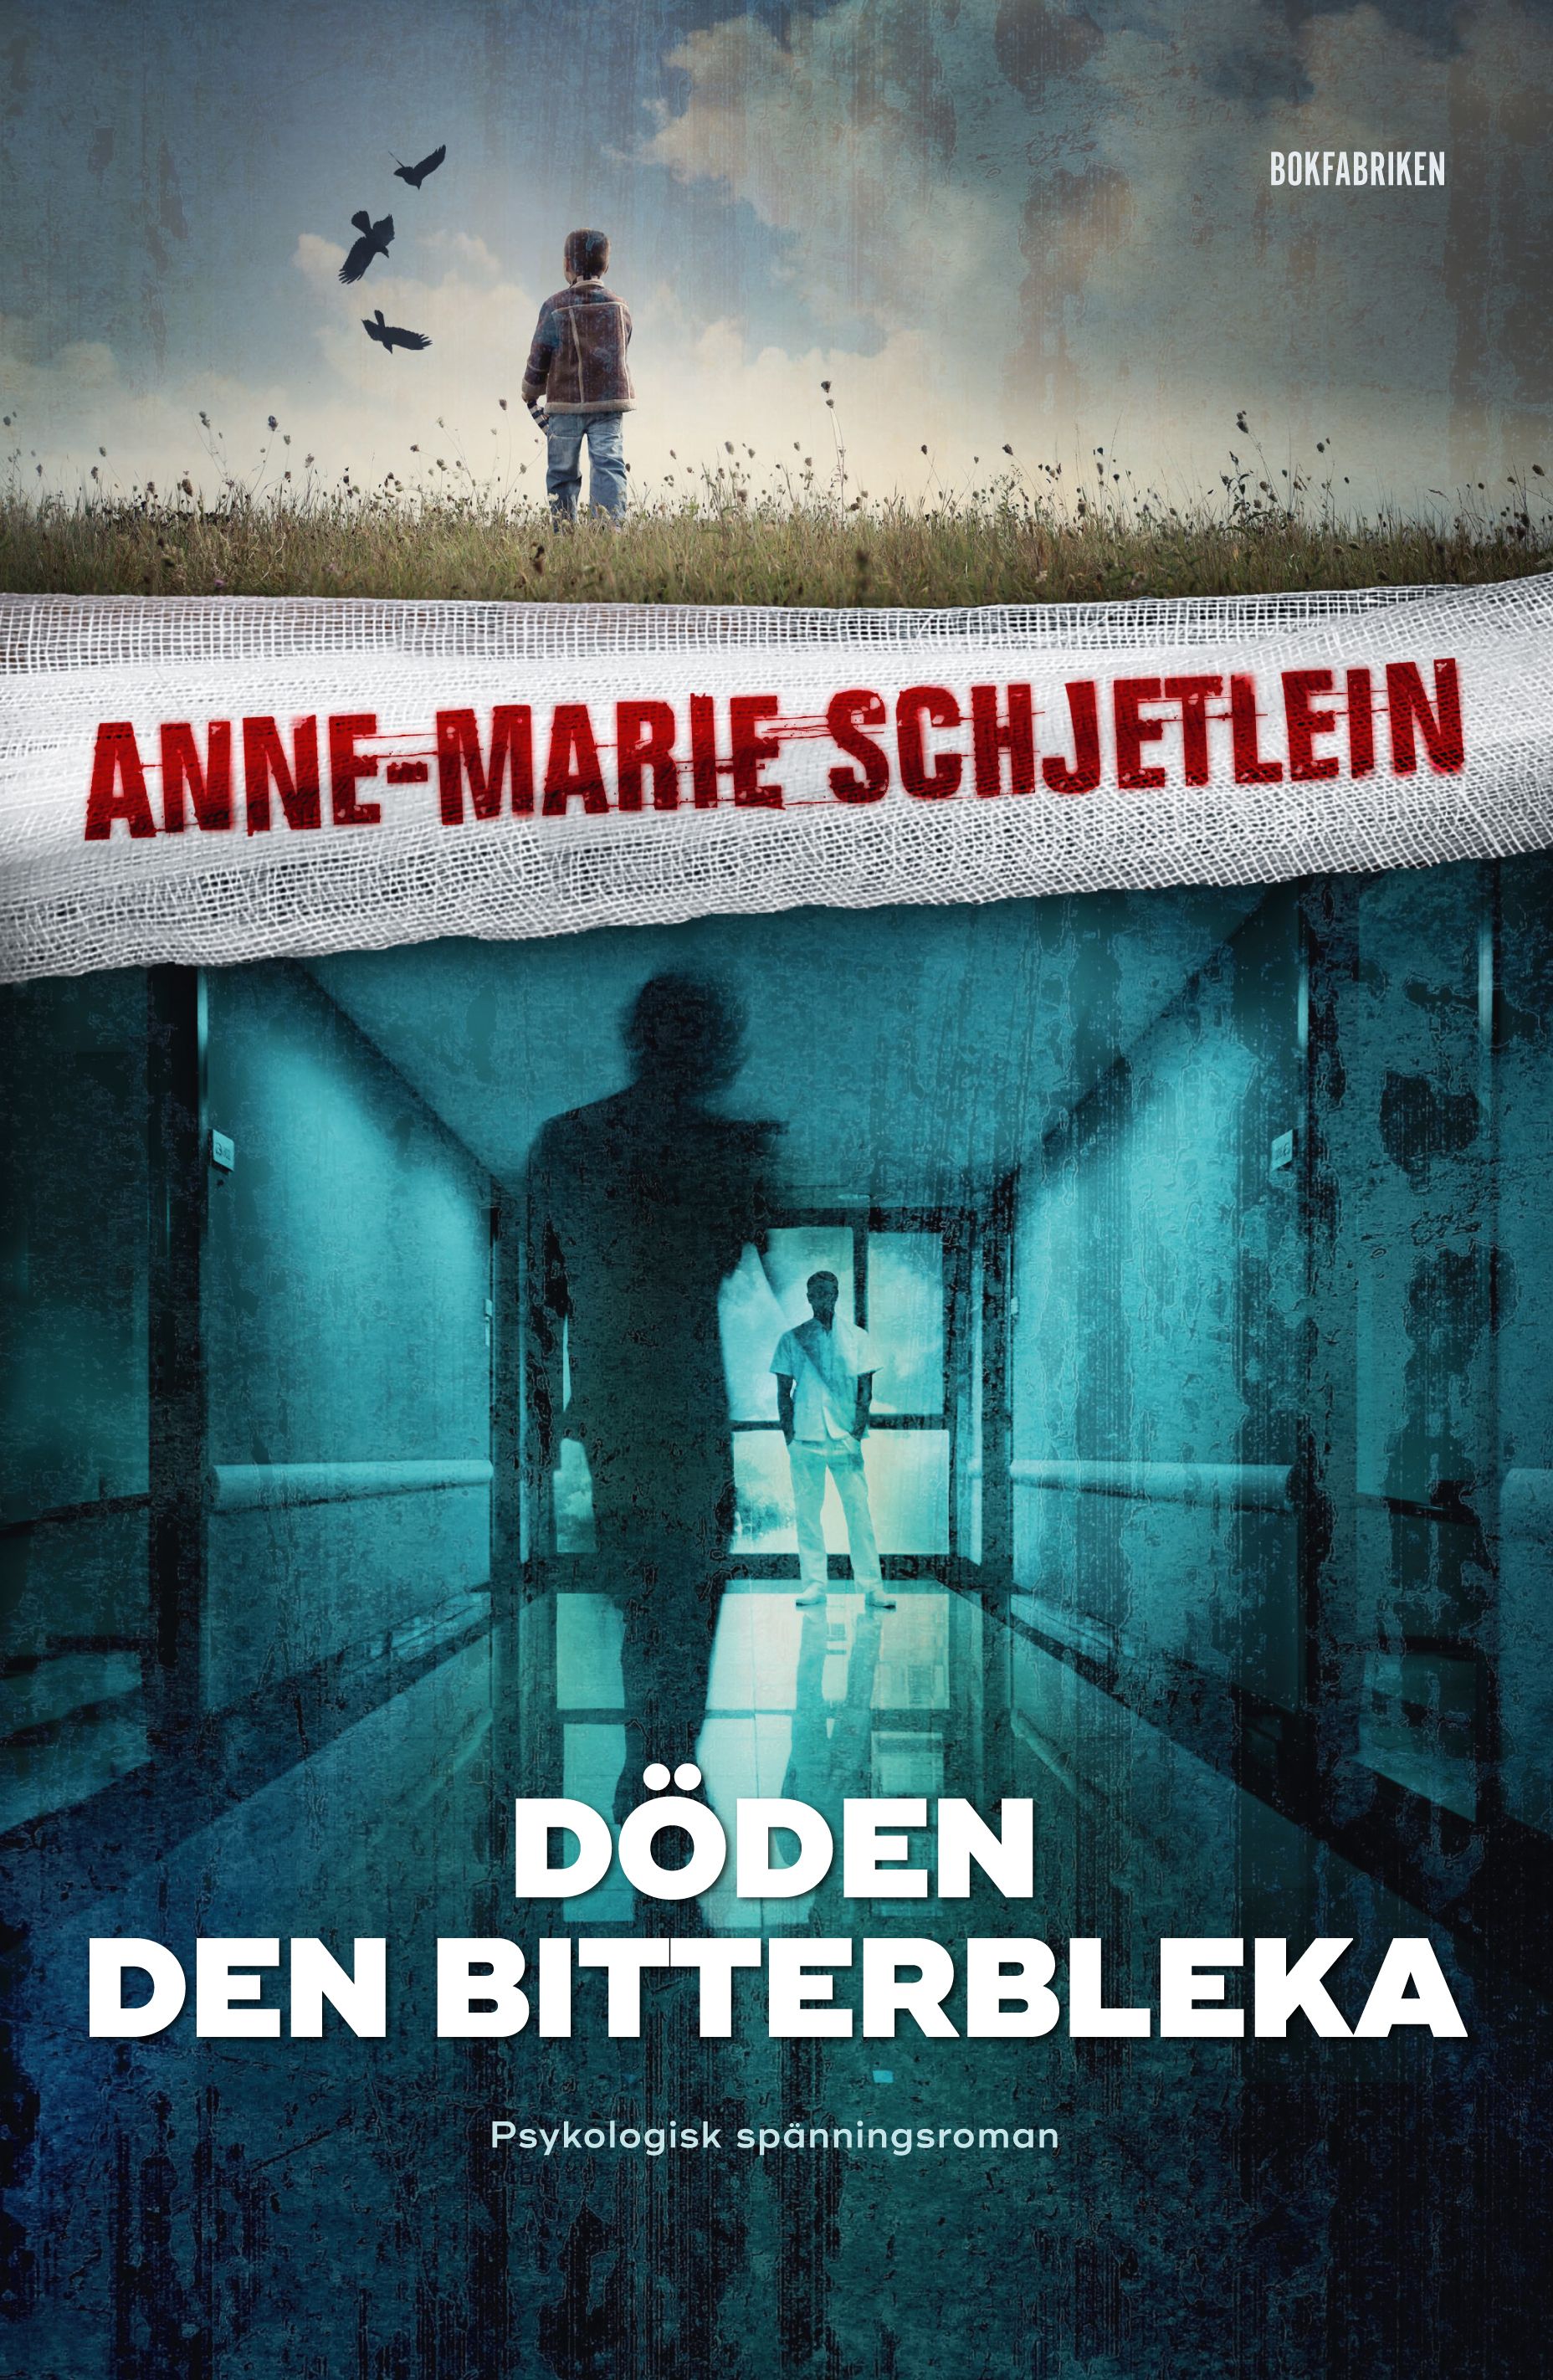 Döden den bitterbleka, e-bog af Anne-Marie Schjetlein